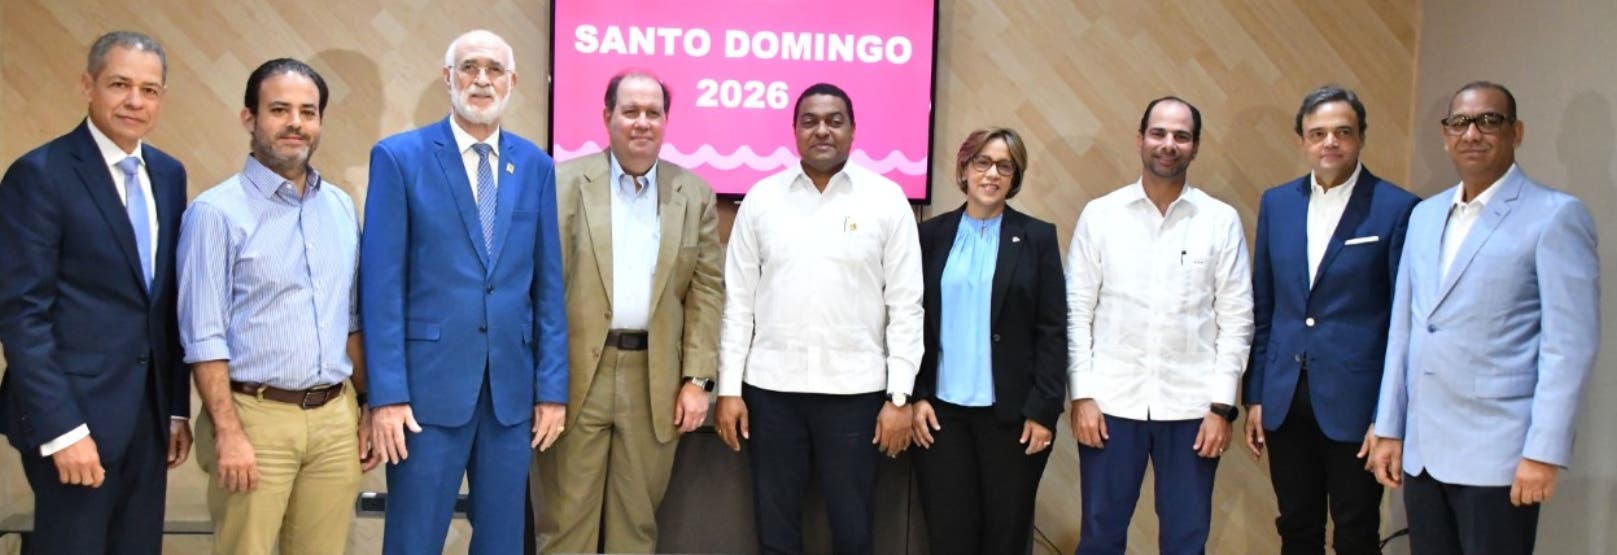 El Comité Juegos 2026 se propone un evento unificador  dominicanos